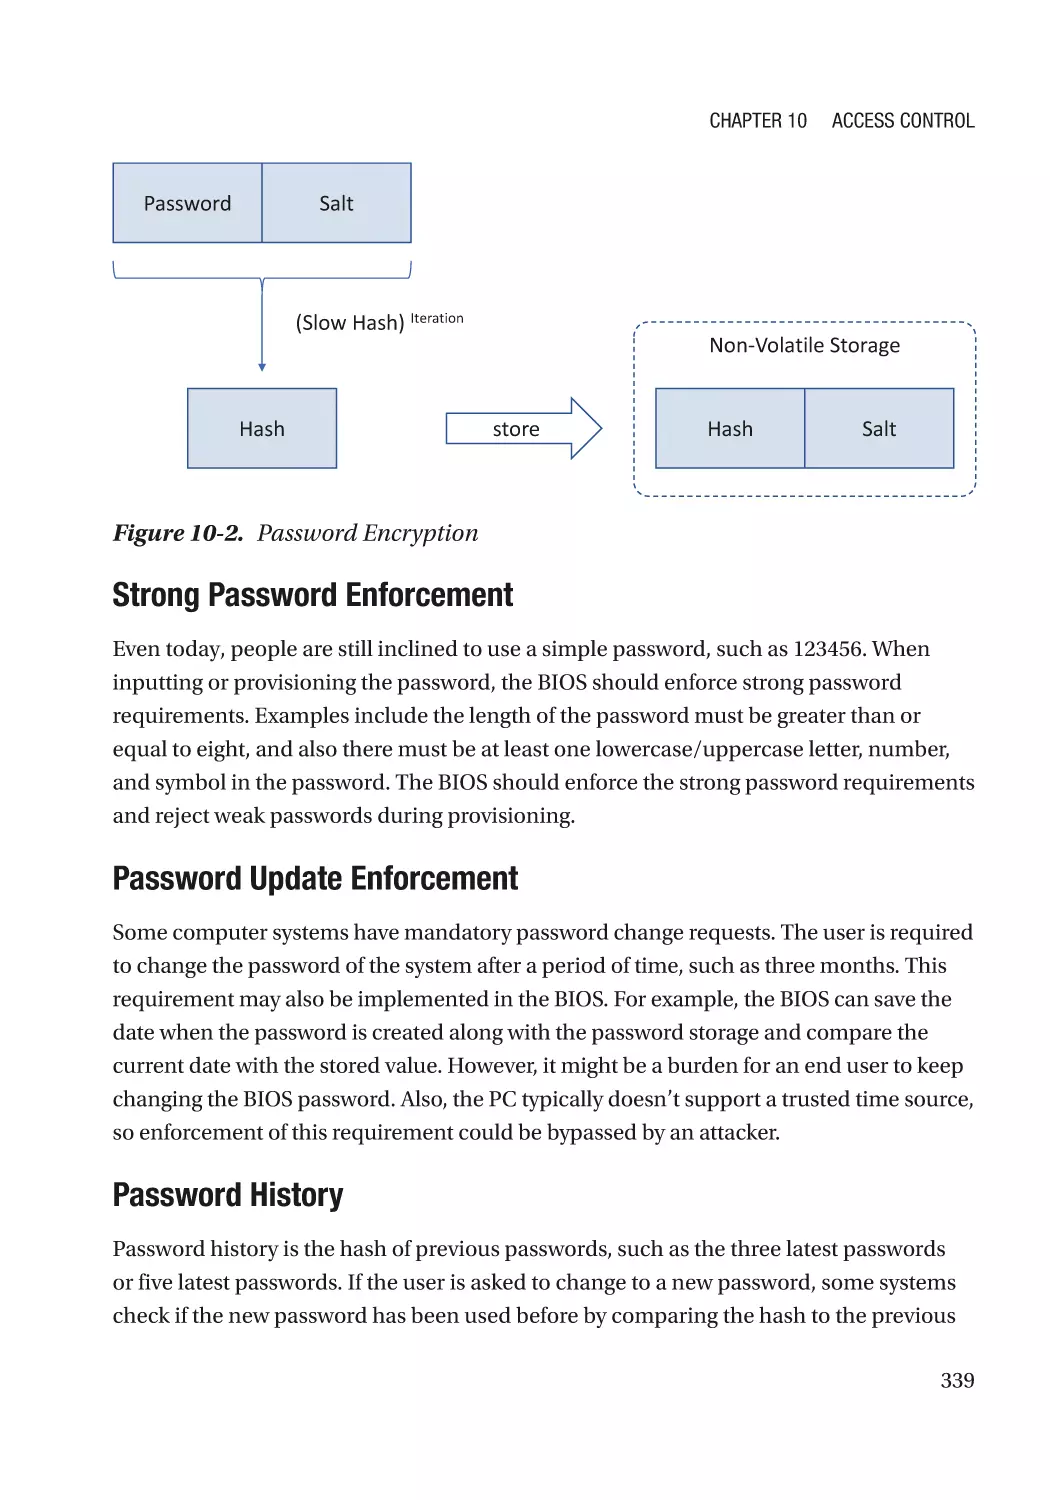 Strong Password Enforcement
Password Update Enforcement
Password History